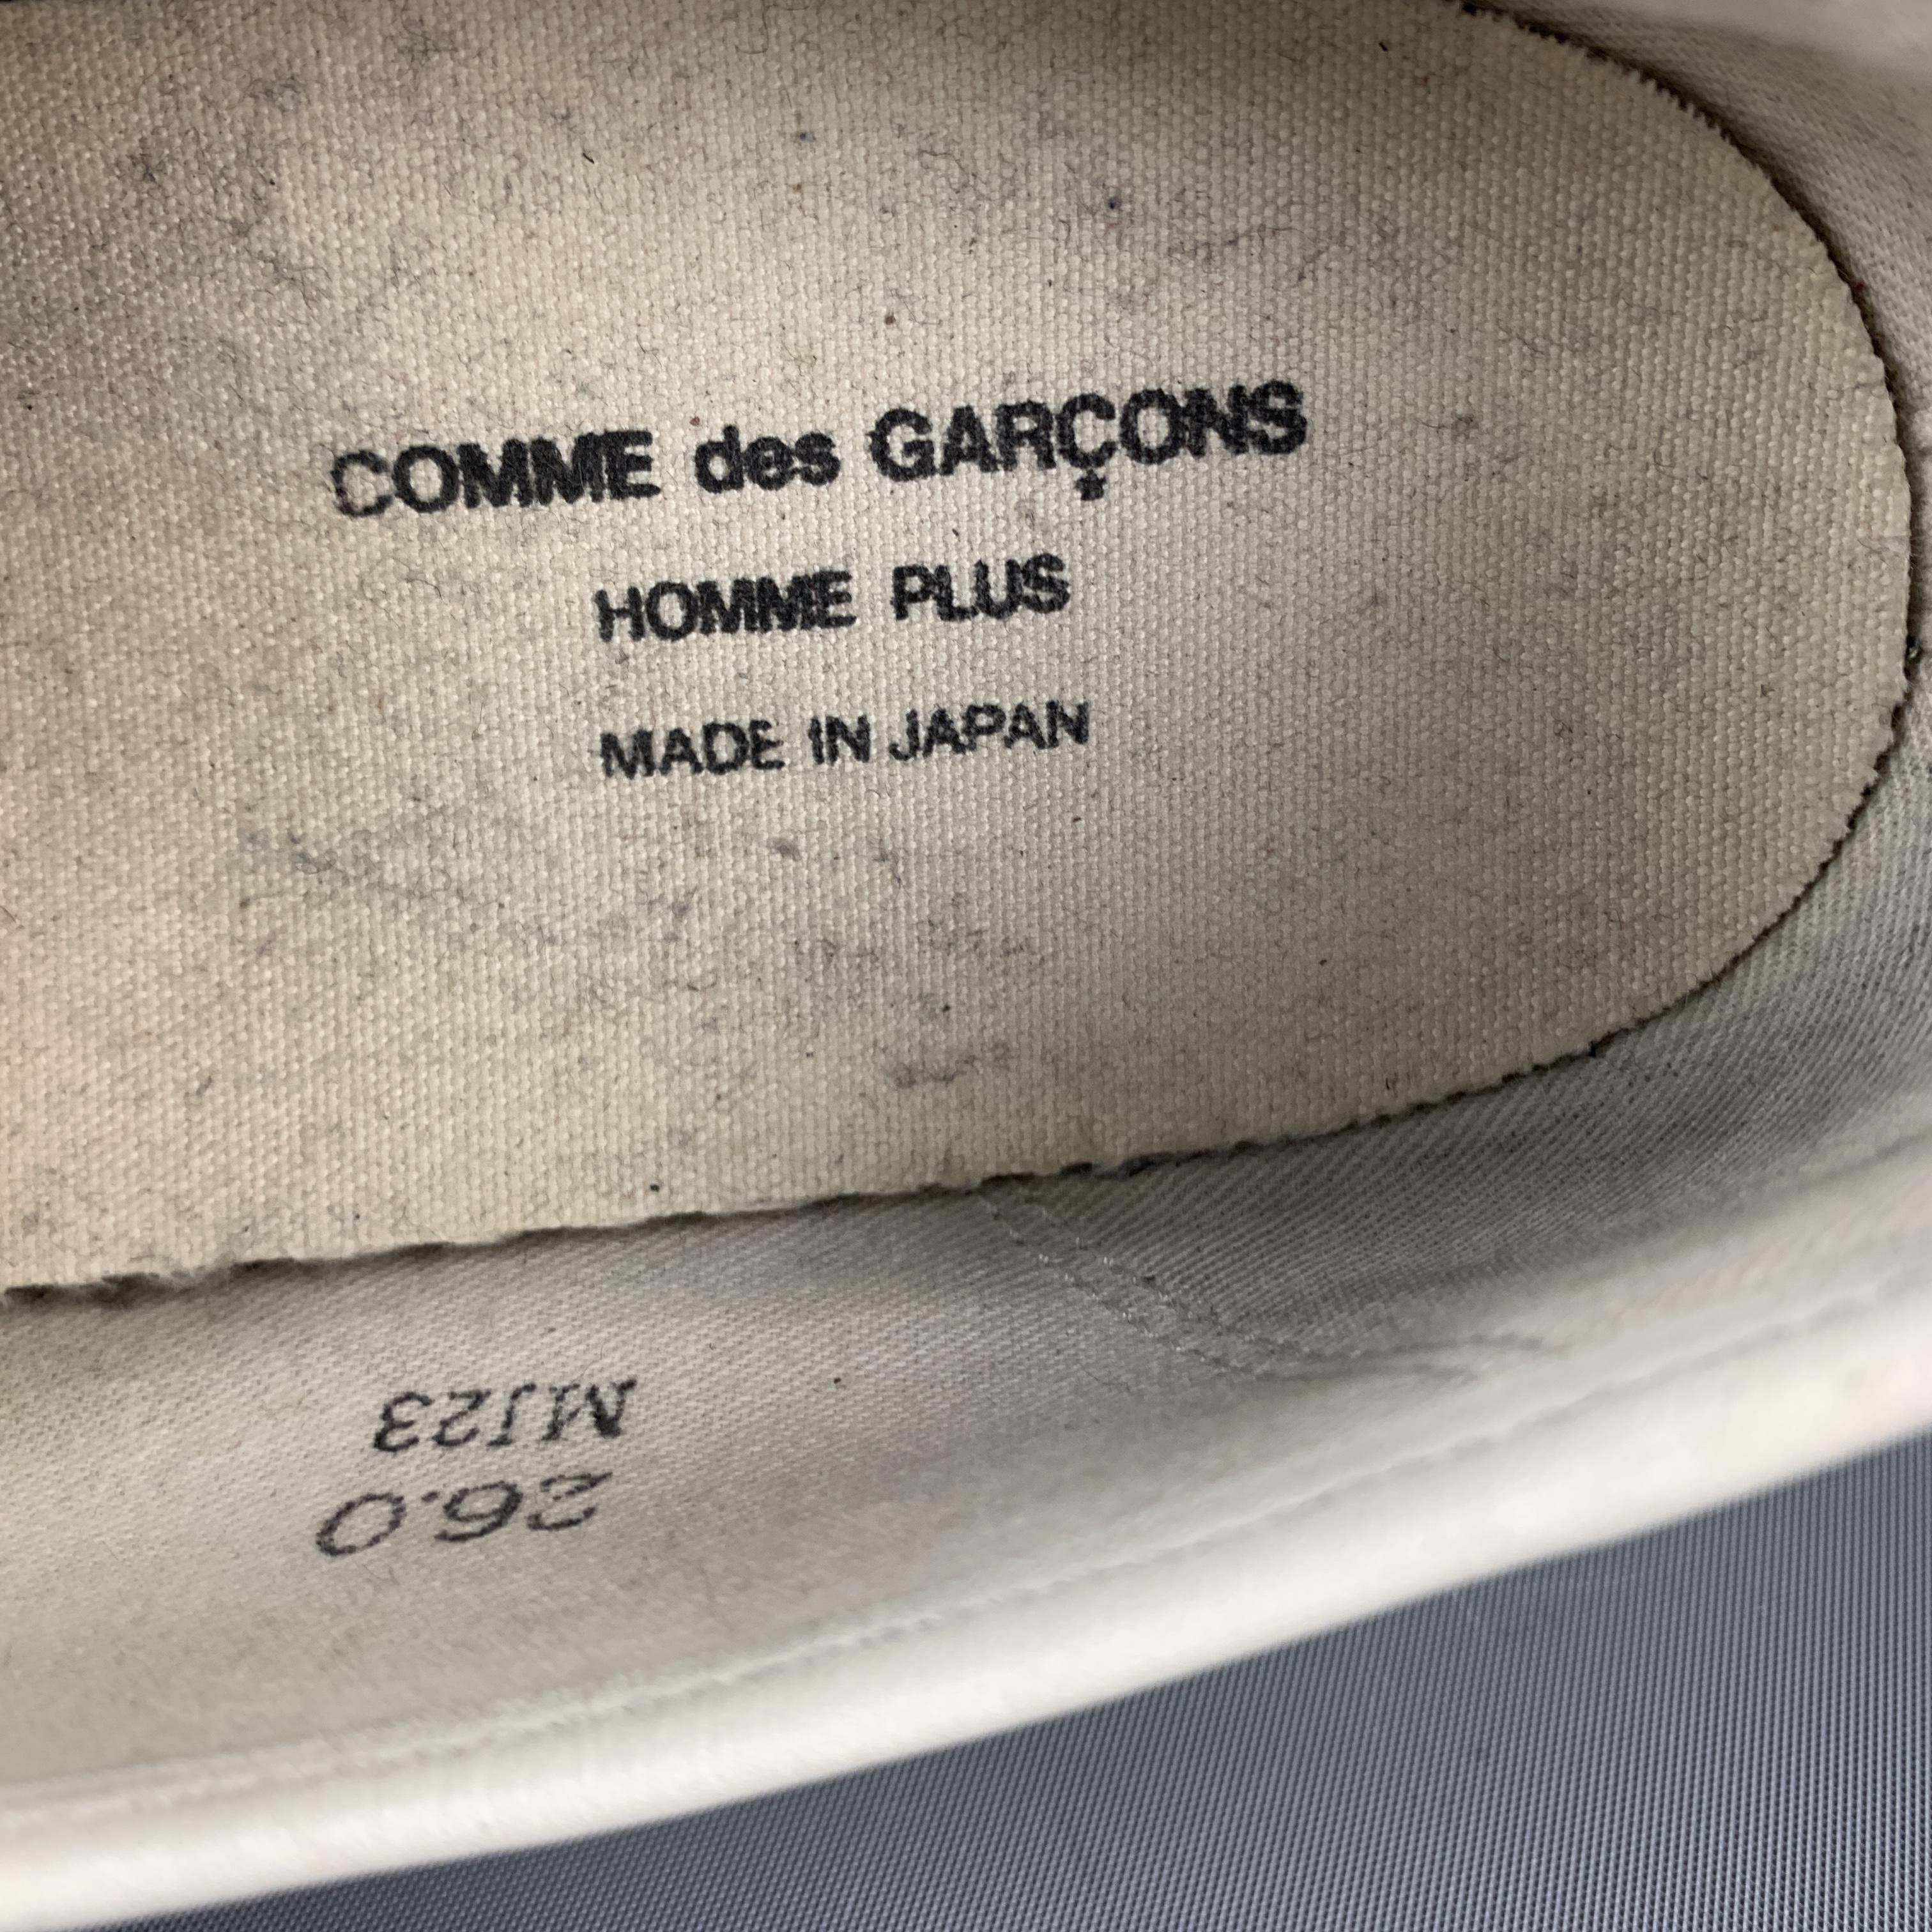 Men's COMME des GARCONS HOMME PLUS Size 9 Cream Brown & Black Low Top Sneakers